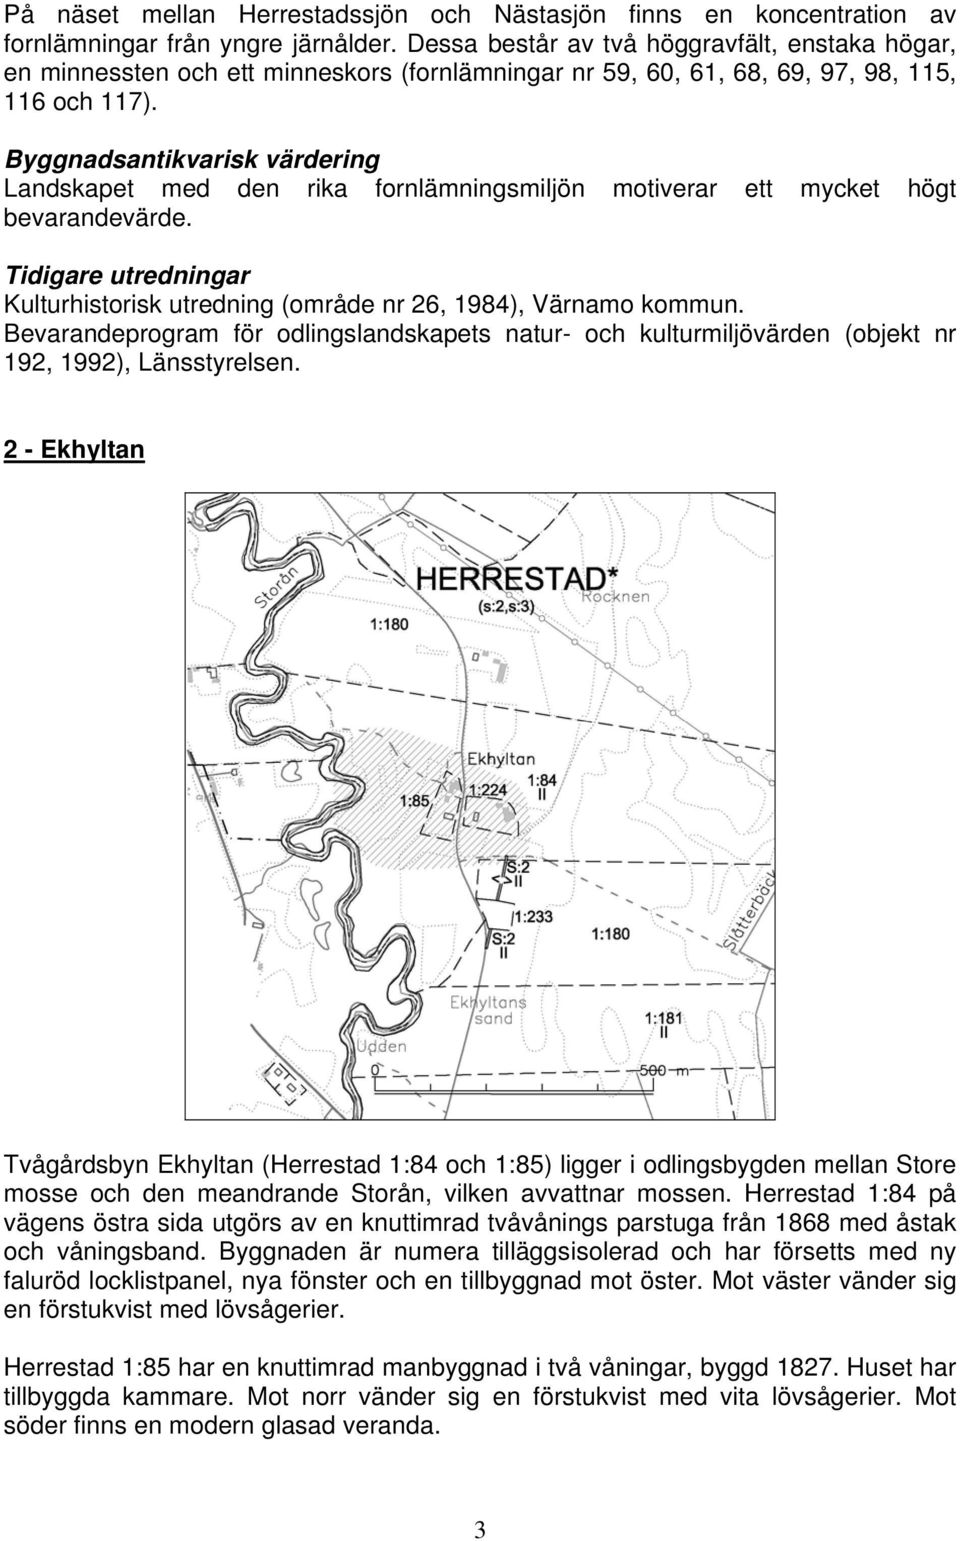 Byggnadsantikvarisk värdering Landskapet med den rika fornlämningsmiljön motiverar ett mycket högt bevarandevärde. Tidigare utredningar Kulturhistorisk utredning (område nr 26, 1984), Värnamo kommun.